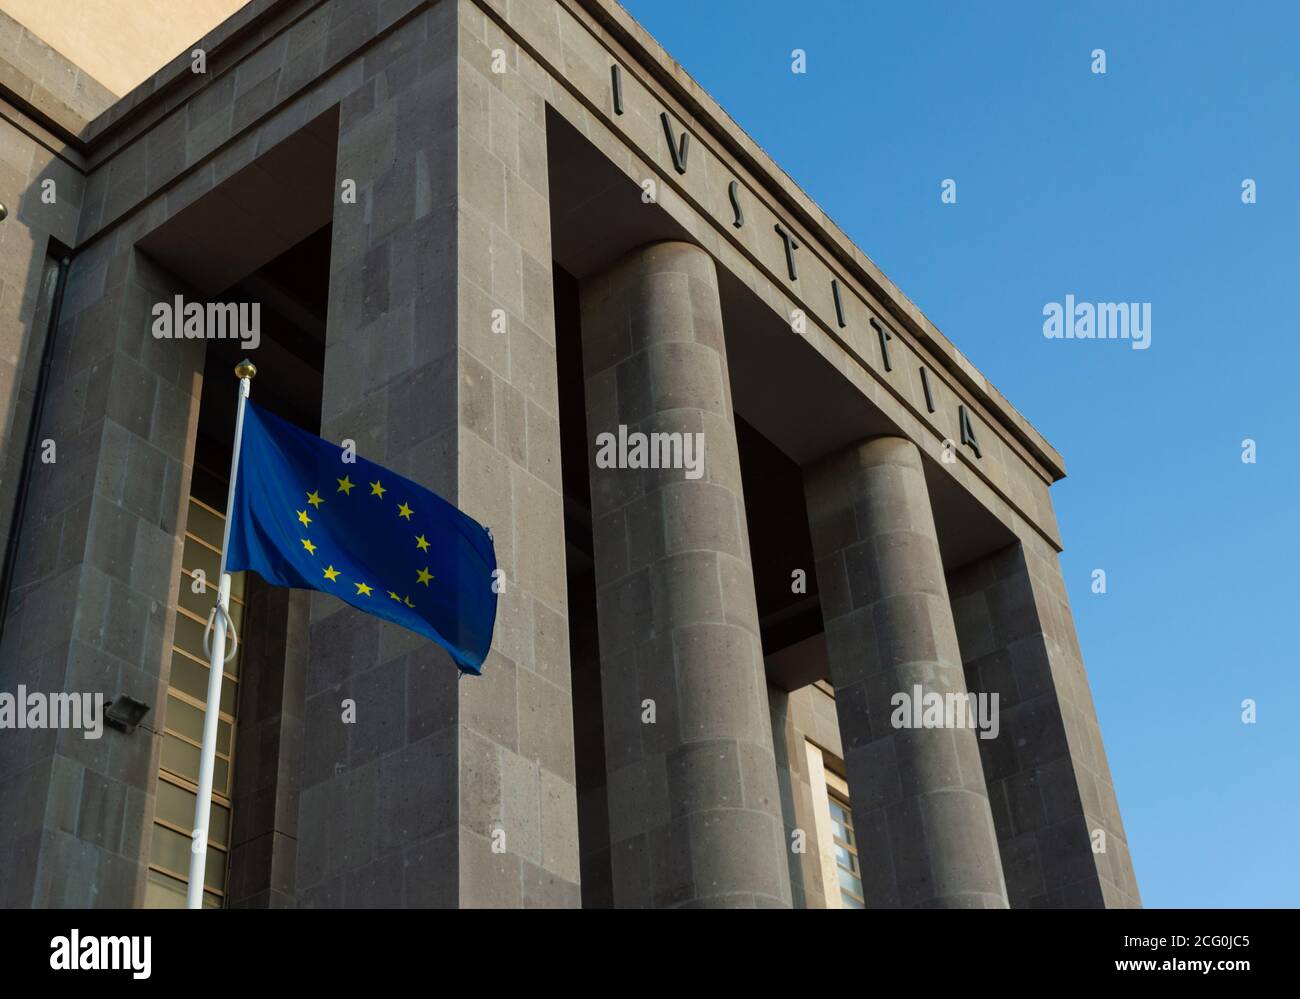 Cagliari, Sardaigne, Italie - septembre 06 2020: Drapeau européen en dehors d'un tribunal avec le mot latin IUSTITIA ( Justice), drapeau européen à vent en dehors de b Banque D'Images